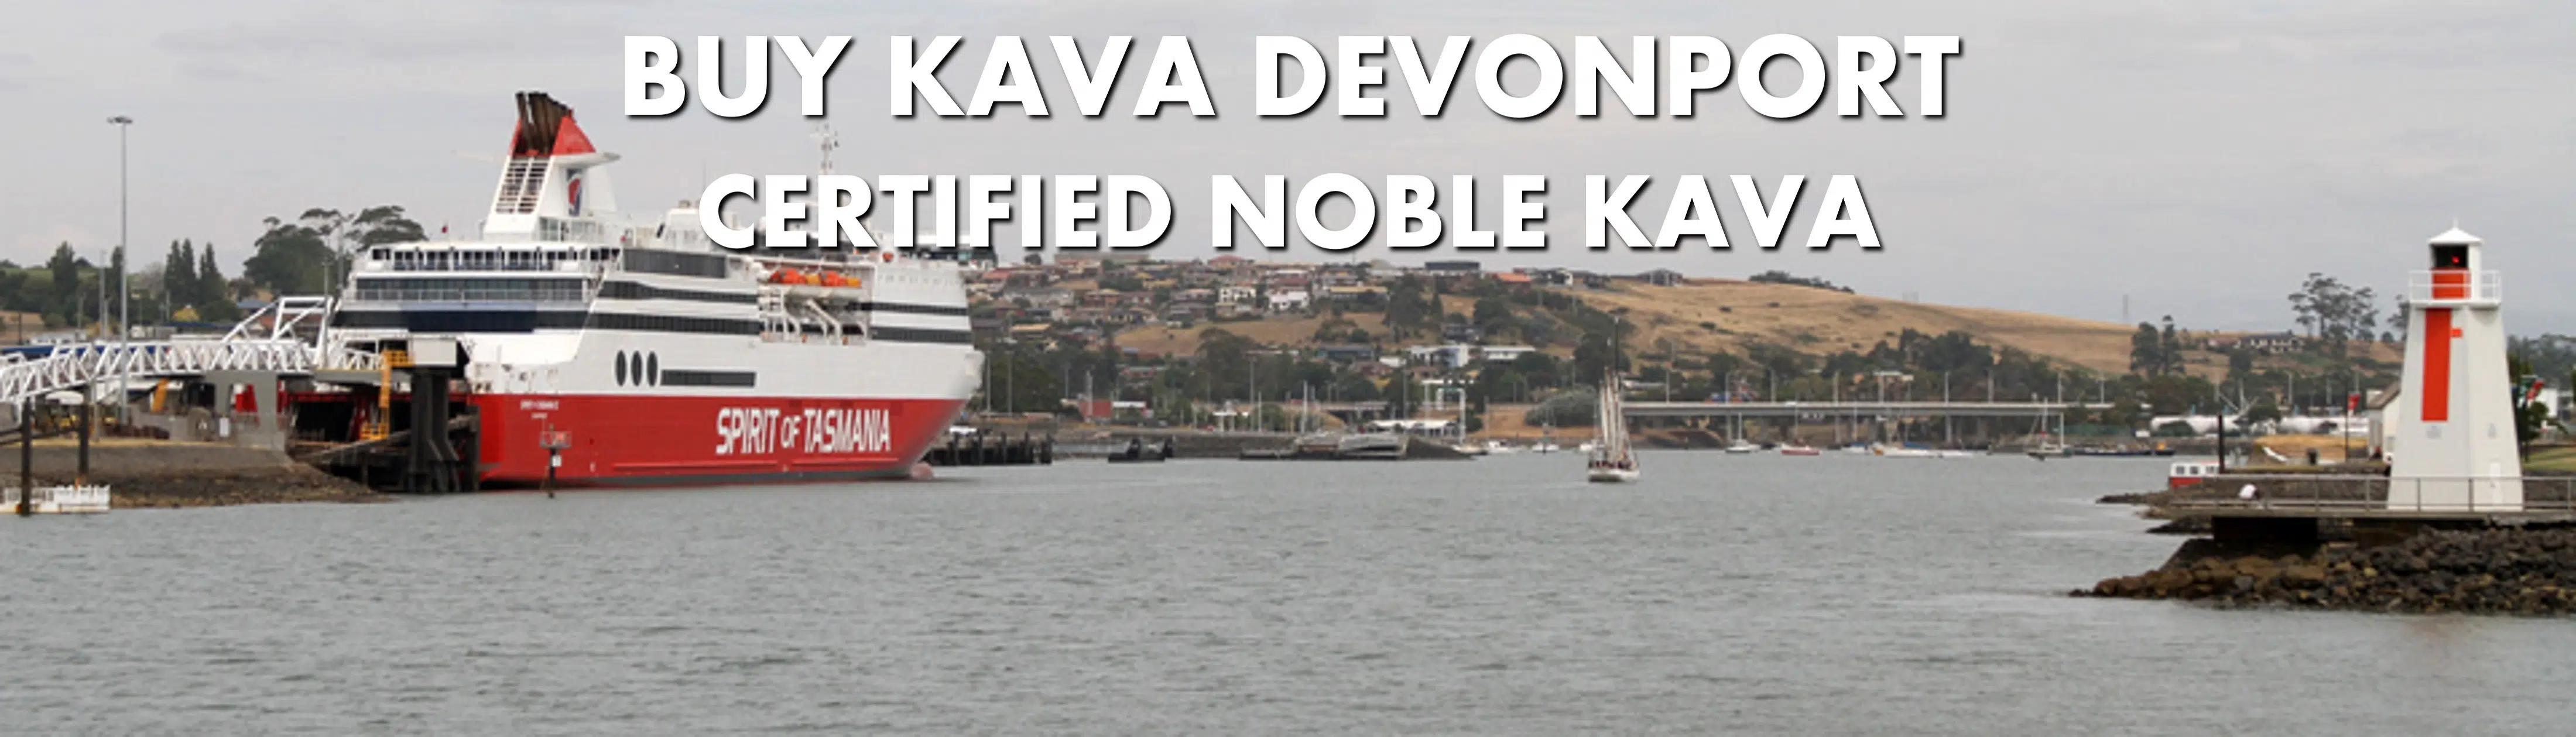 Image of Princess of Tasmania at dock in Devonport Tasmania with caption Buy Kava Devonport Certified Noble Kava